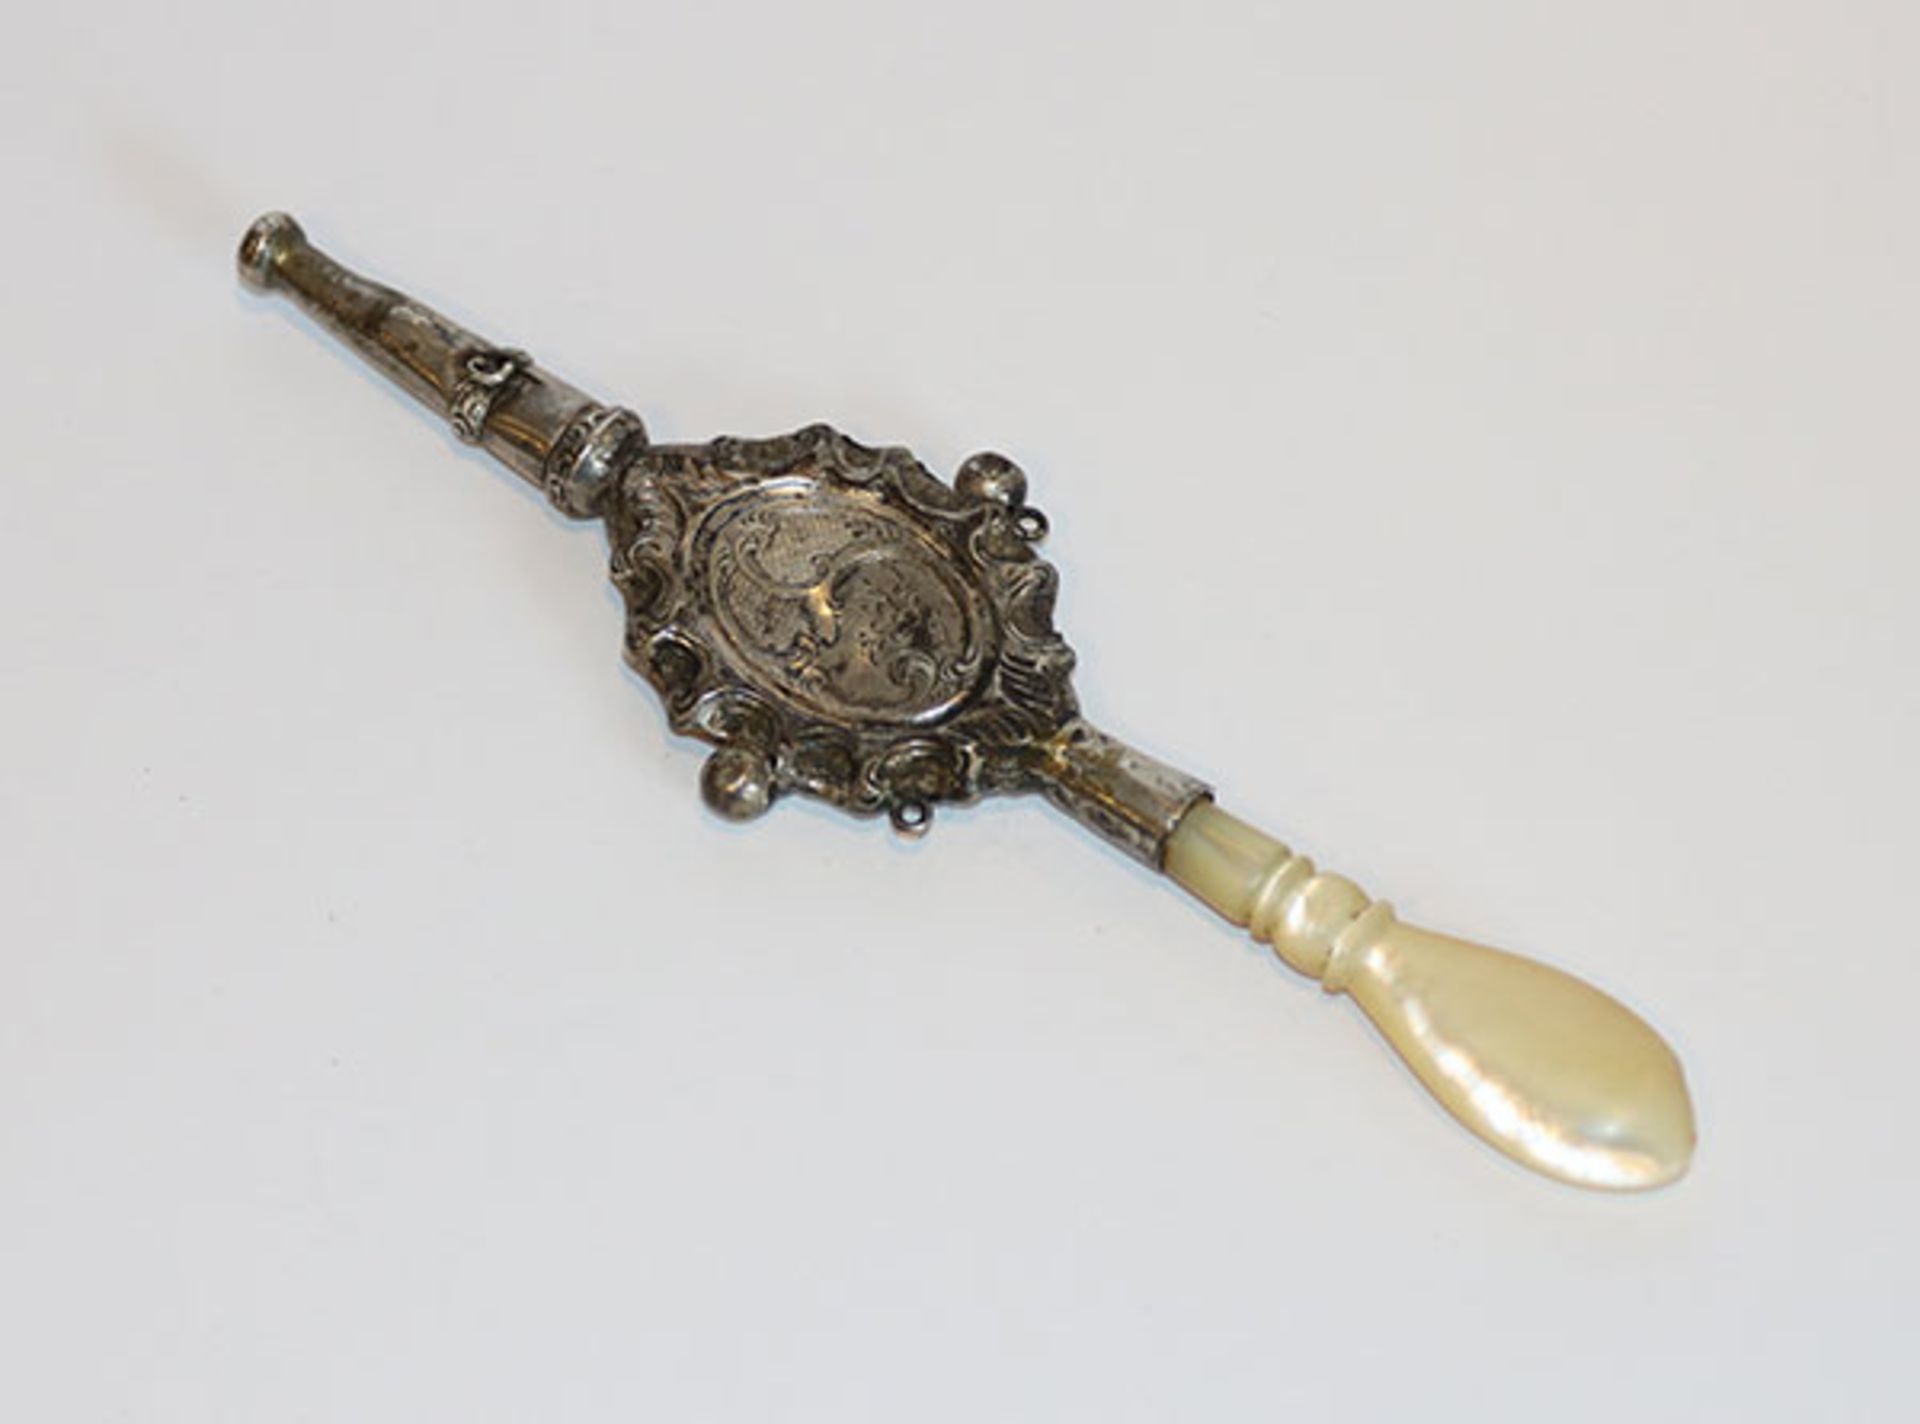 Antike Babyrassel/Pfeife, Silber mit Perlmutt, nicht komplett und beschädigt, L 14 cm, Altersspuren